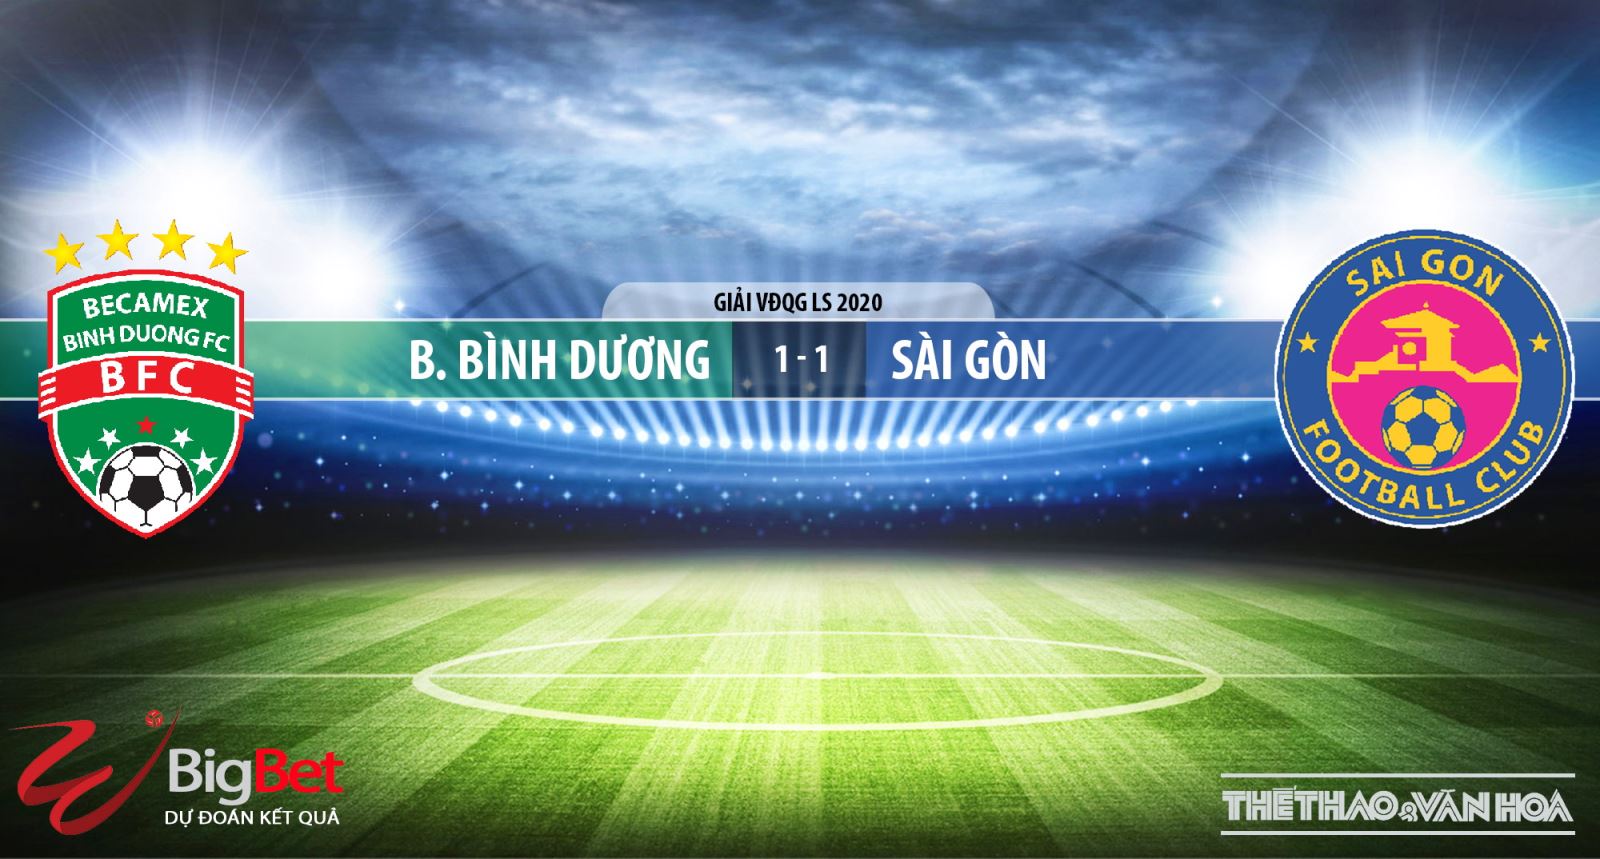 Bình Dương vs Sài Gòn, Bình Dương, Sài Gòn, nhận định bóng đá Bình Dương vs Sài Gòn, trực tiếp Bình Dương vs Sài Gòn, kèo bóng đá, dự đoán Bình Dương vs Sài Gòn